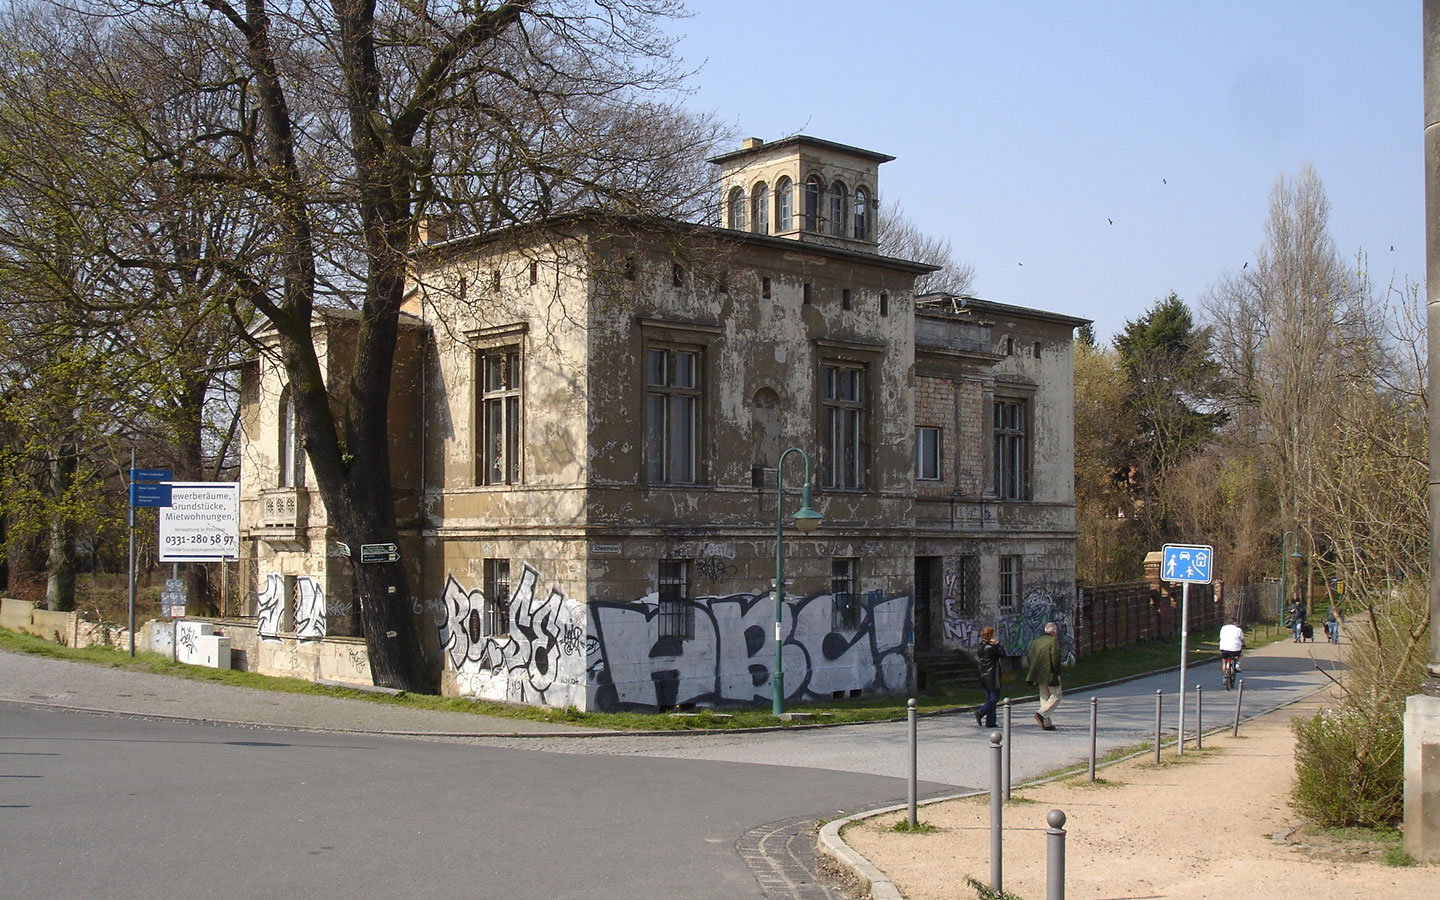 Potsdam Villa Schöningen